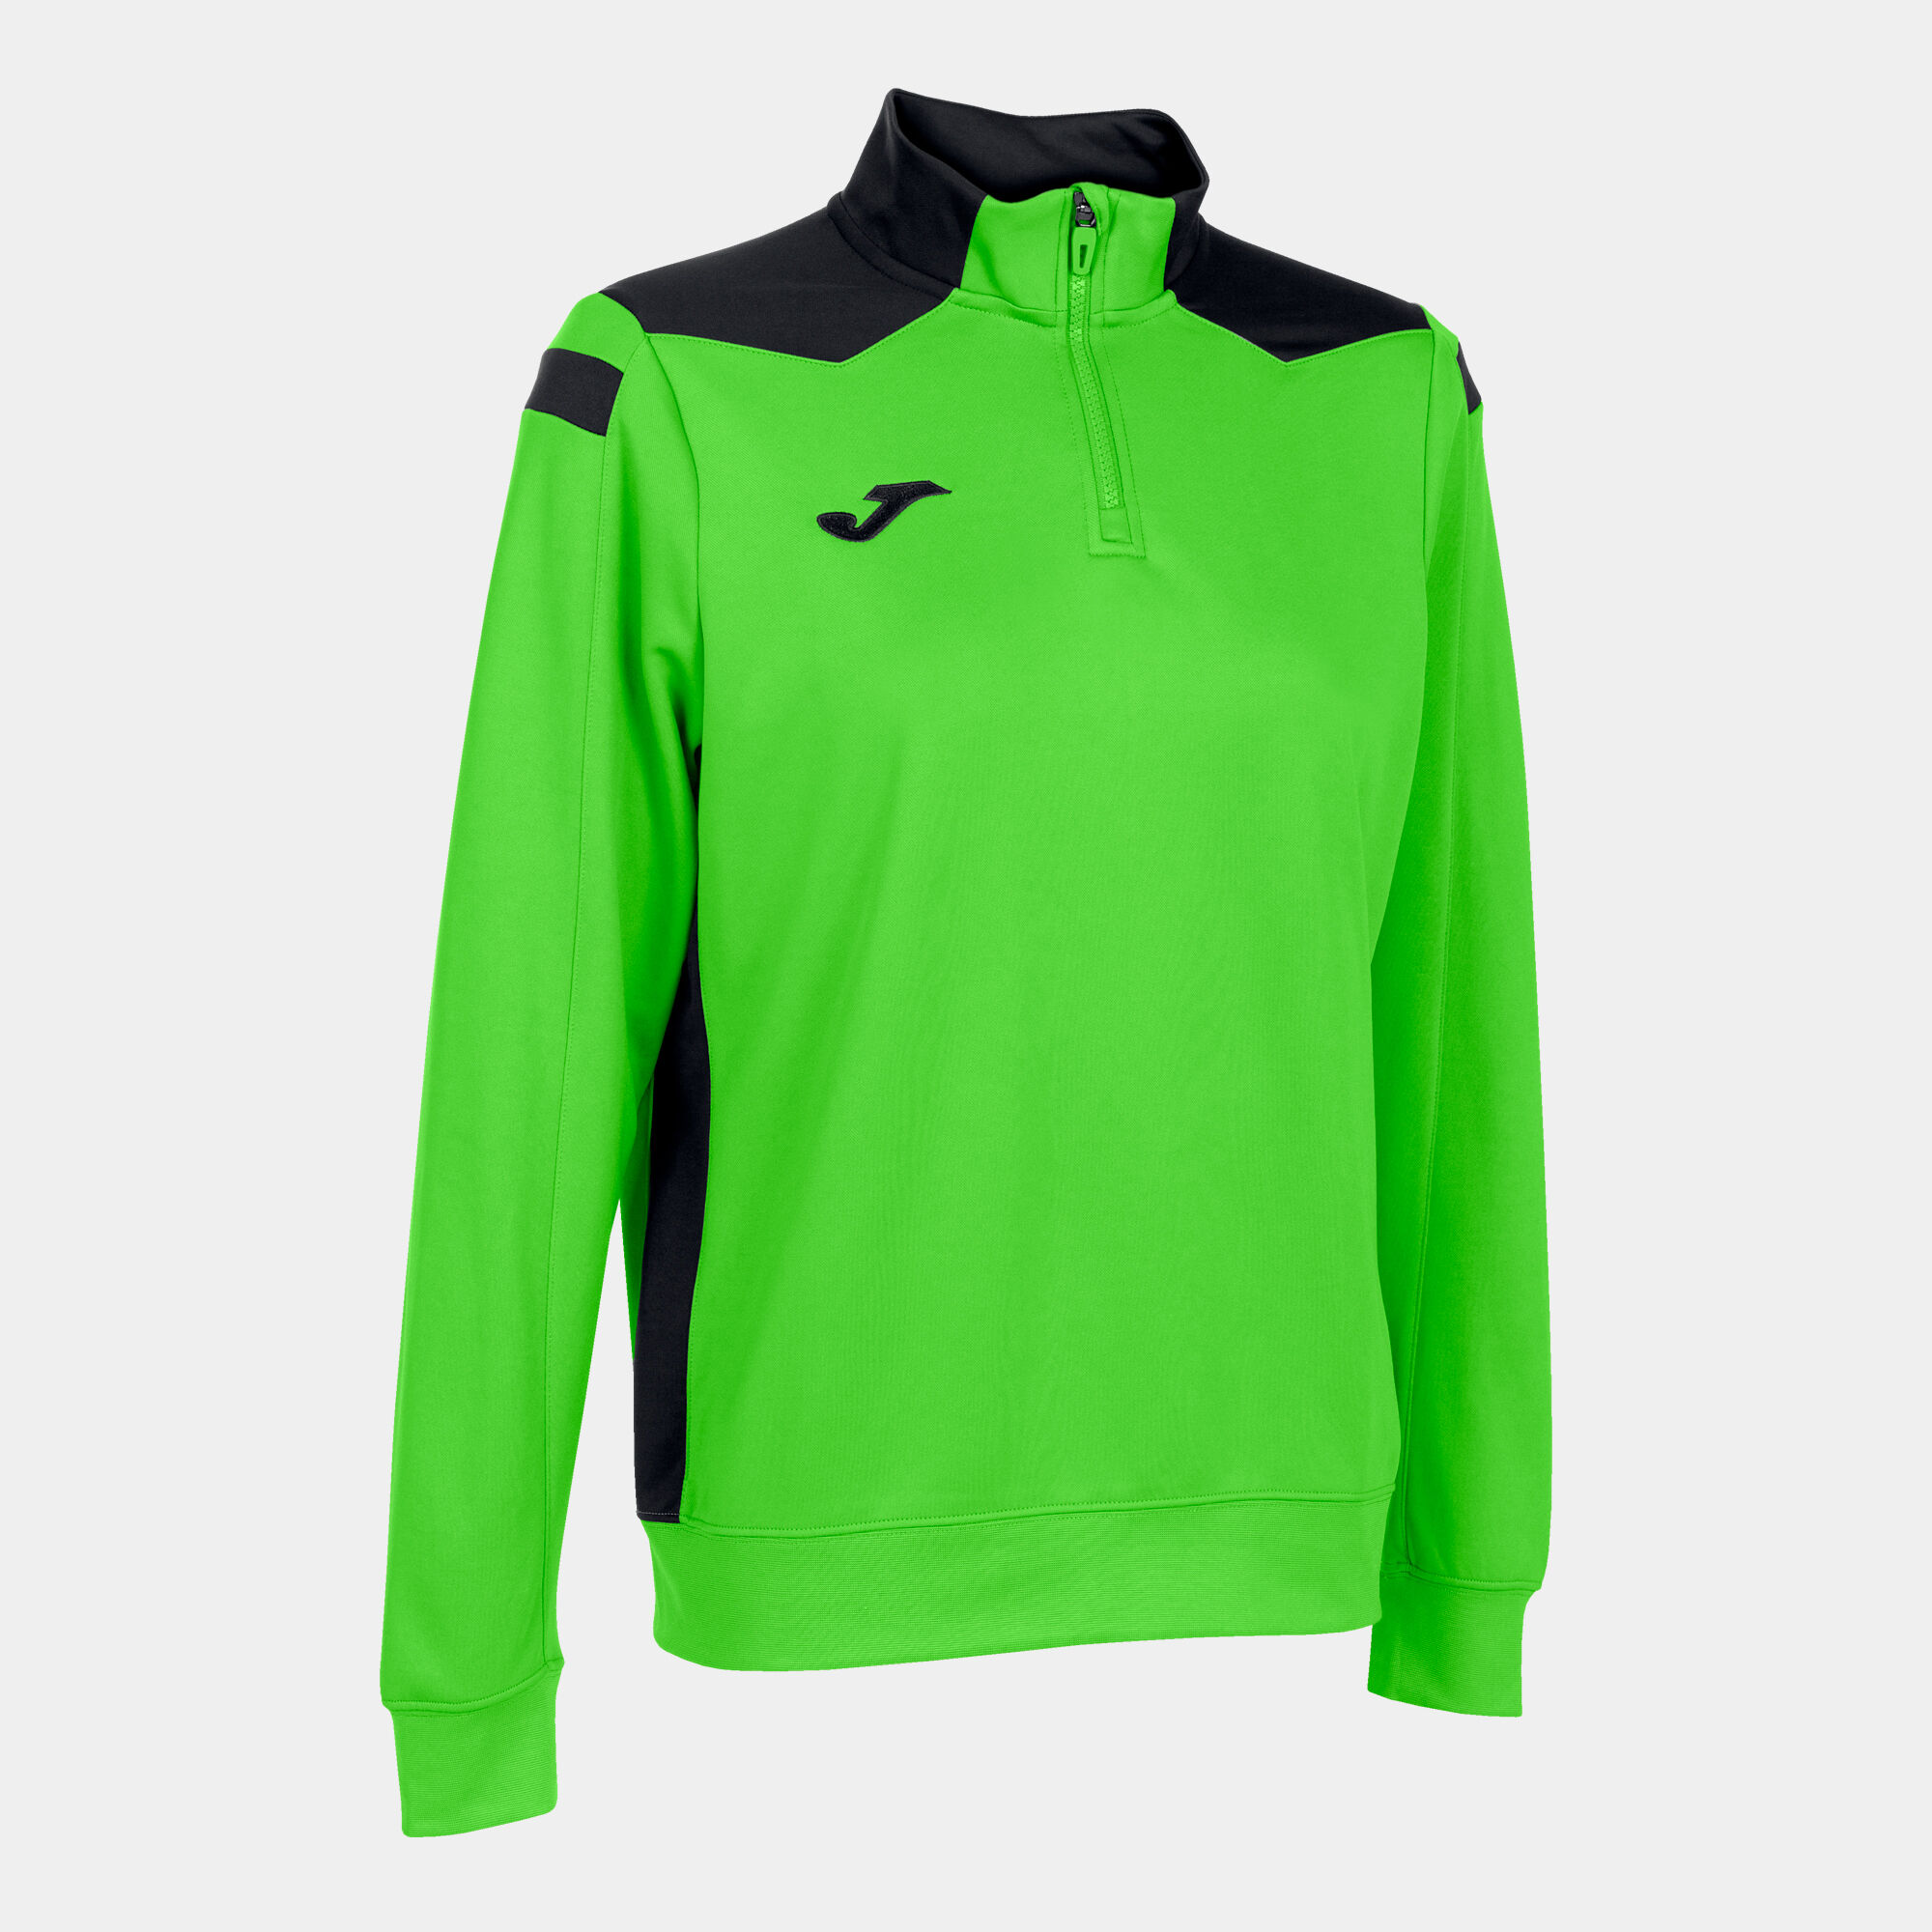 Sweat-shirt femme Championship VI vert fluo noir